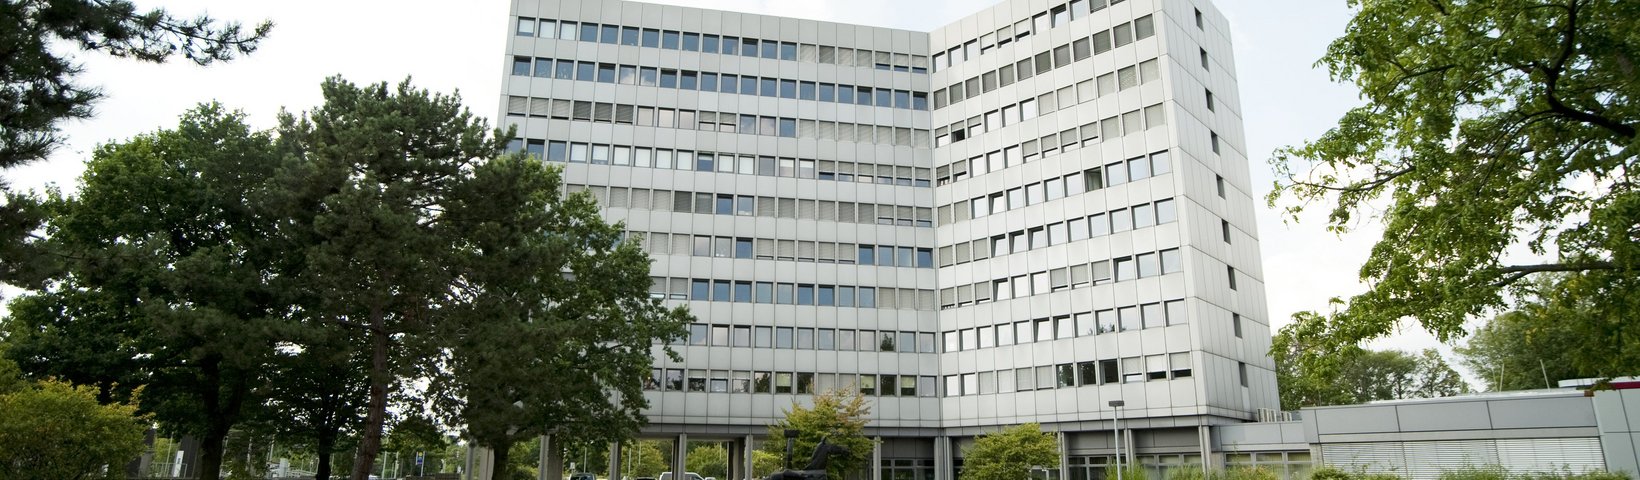 Verwaltungsgebäude der Tierärztlichen Hochschule Hannover 